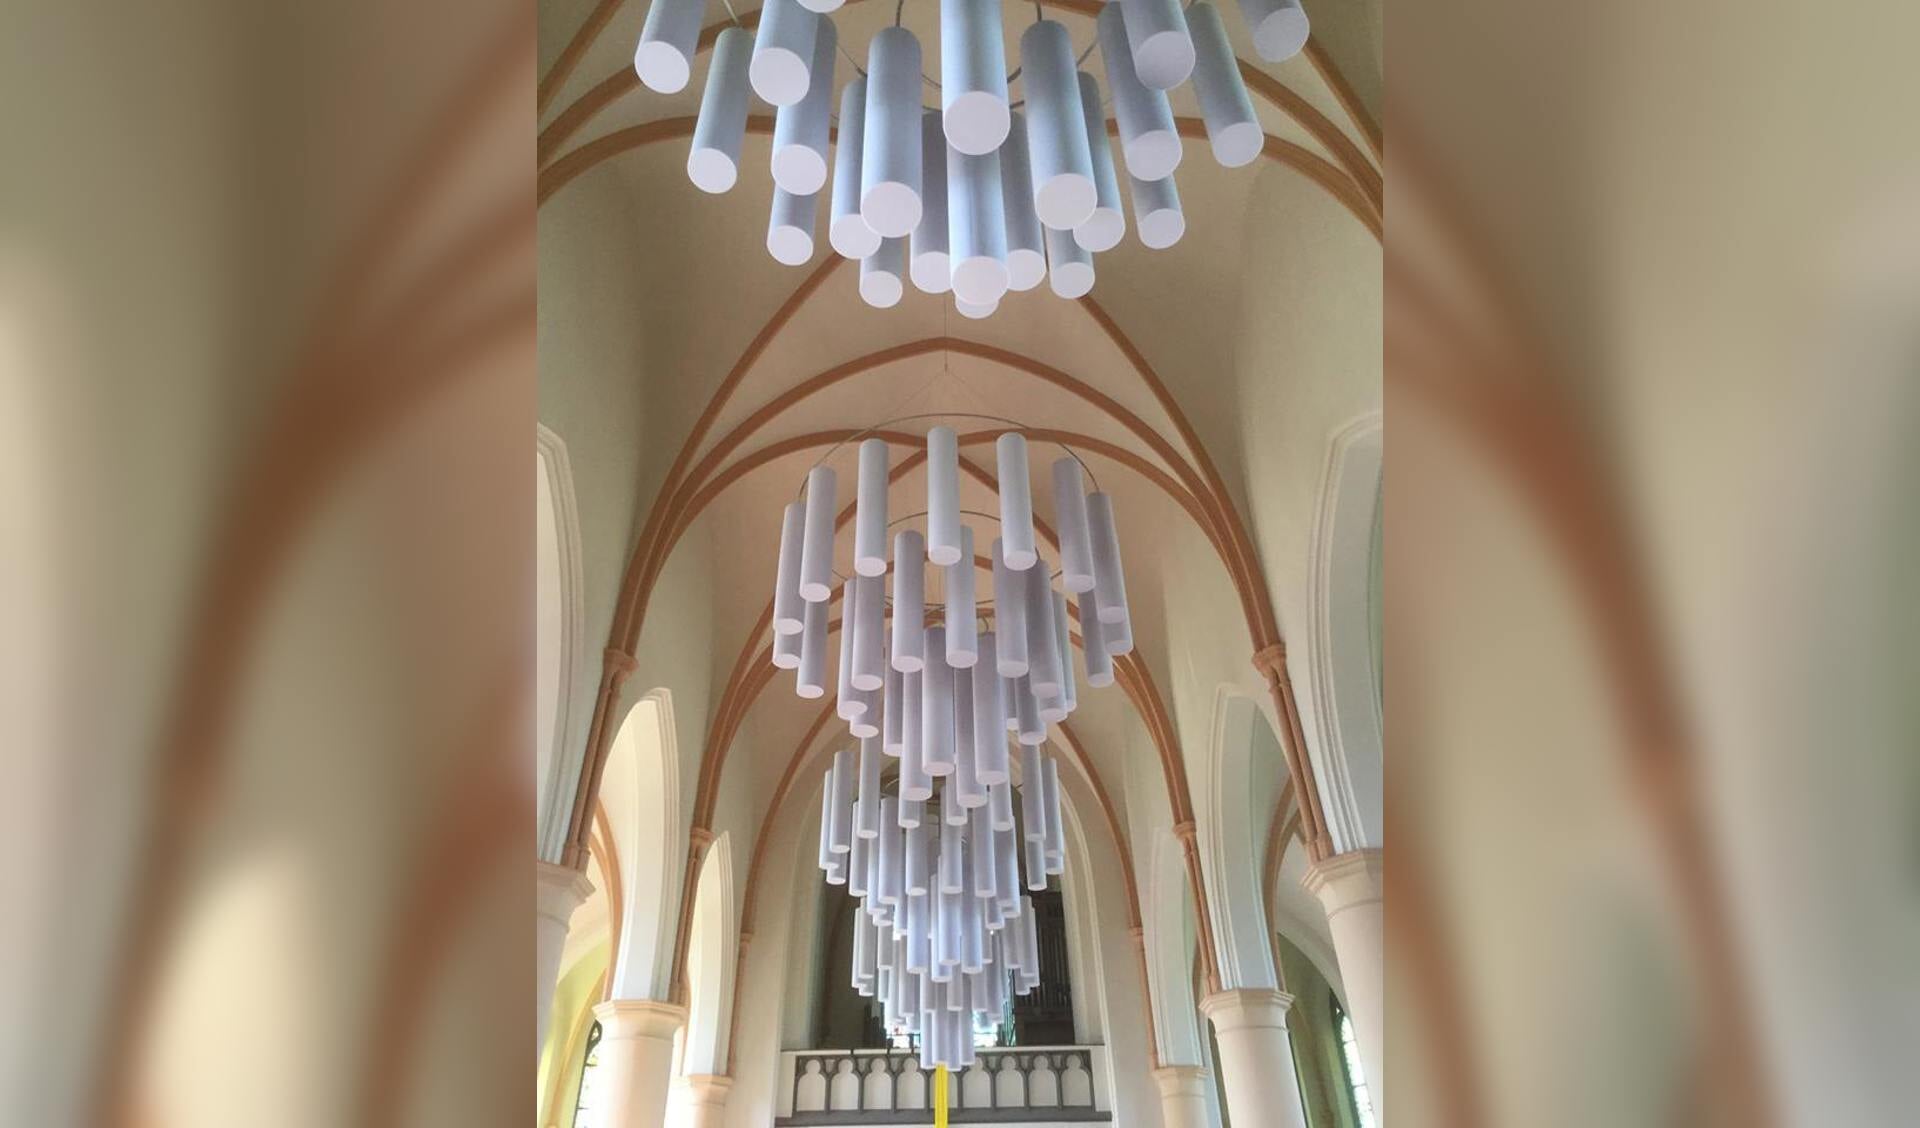 Een voorbeeld van het omvormen van kerk naar een multifunctionele ruimte zijn de akoestische kroonluchters met cilinders die de nagalm in het Martinushuus aanzienlijk verminderen. Foto: PR